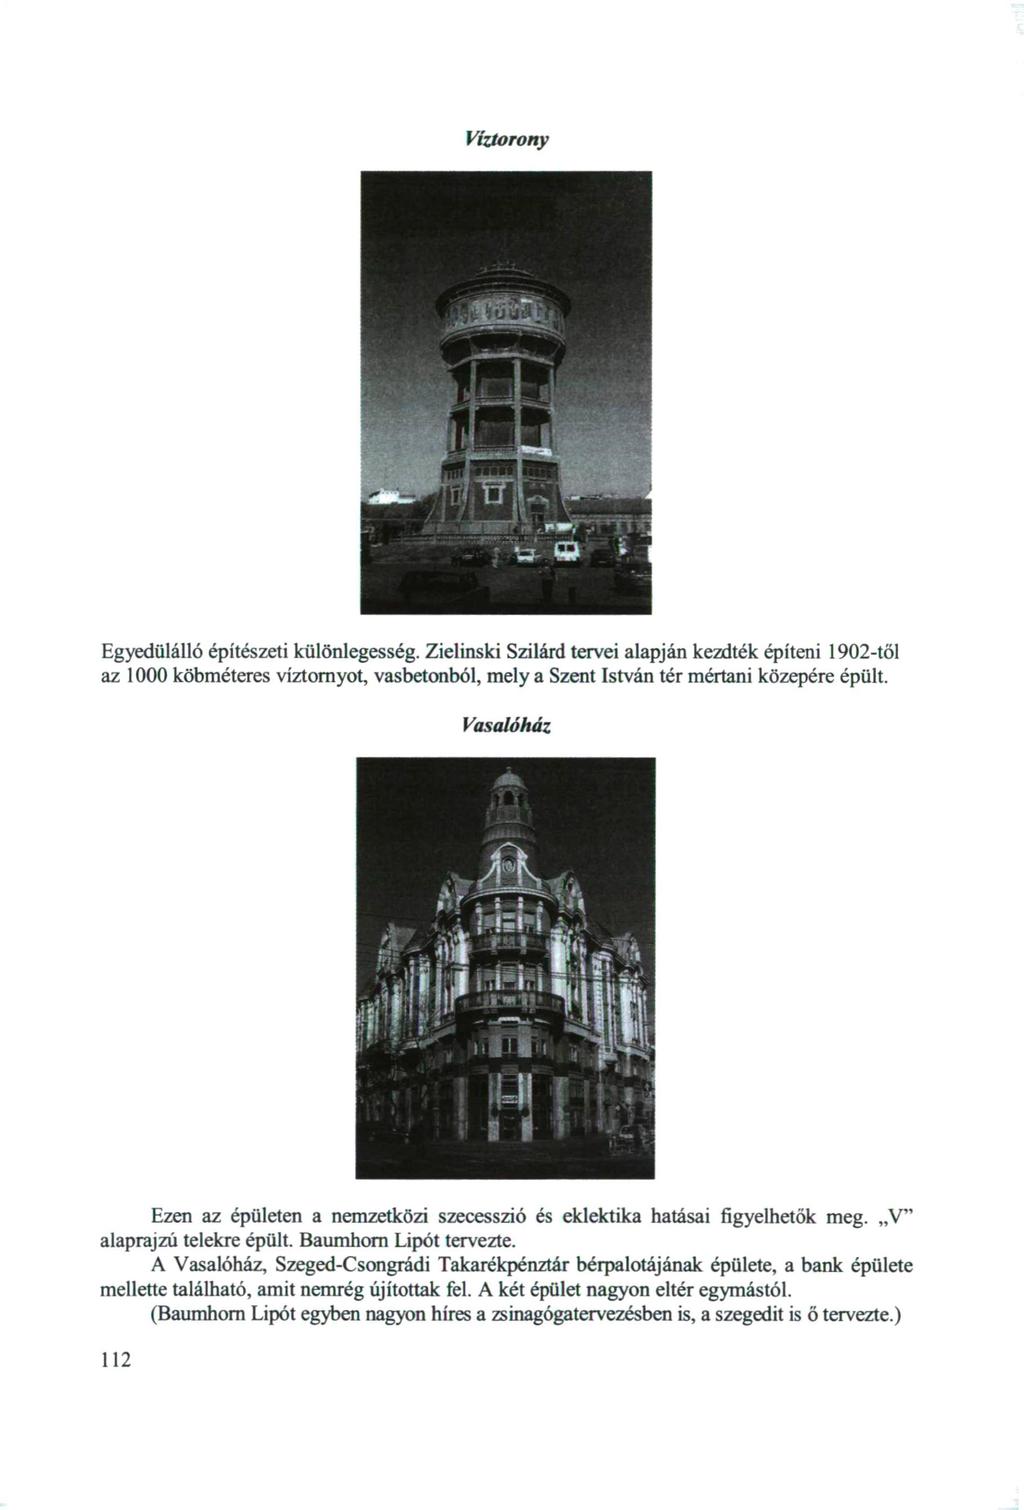 Víztorony Egyedülálló építészeti különlegesség. Zielinski Szilárd tervei alapján kezdték építeni 1902-től az 1000 köbméteres víztornyot, vasbetonból, mely a Szent István tér mértani közepére épült.